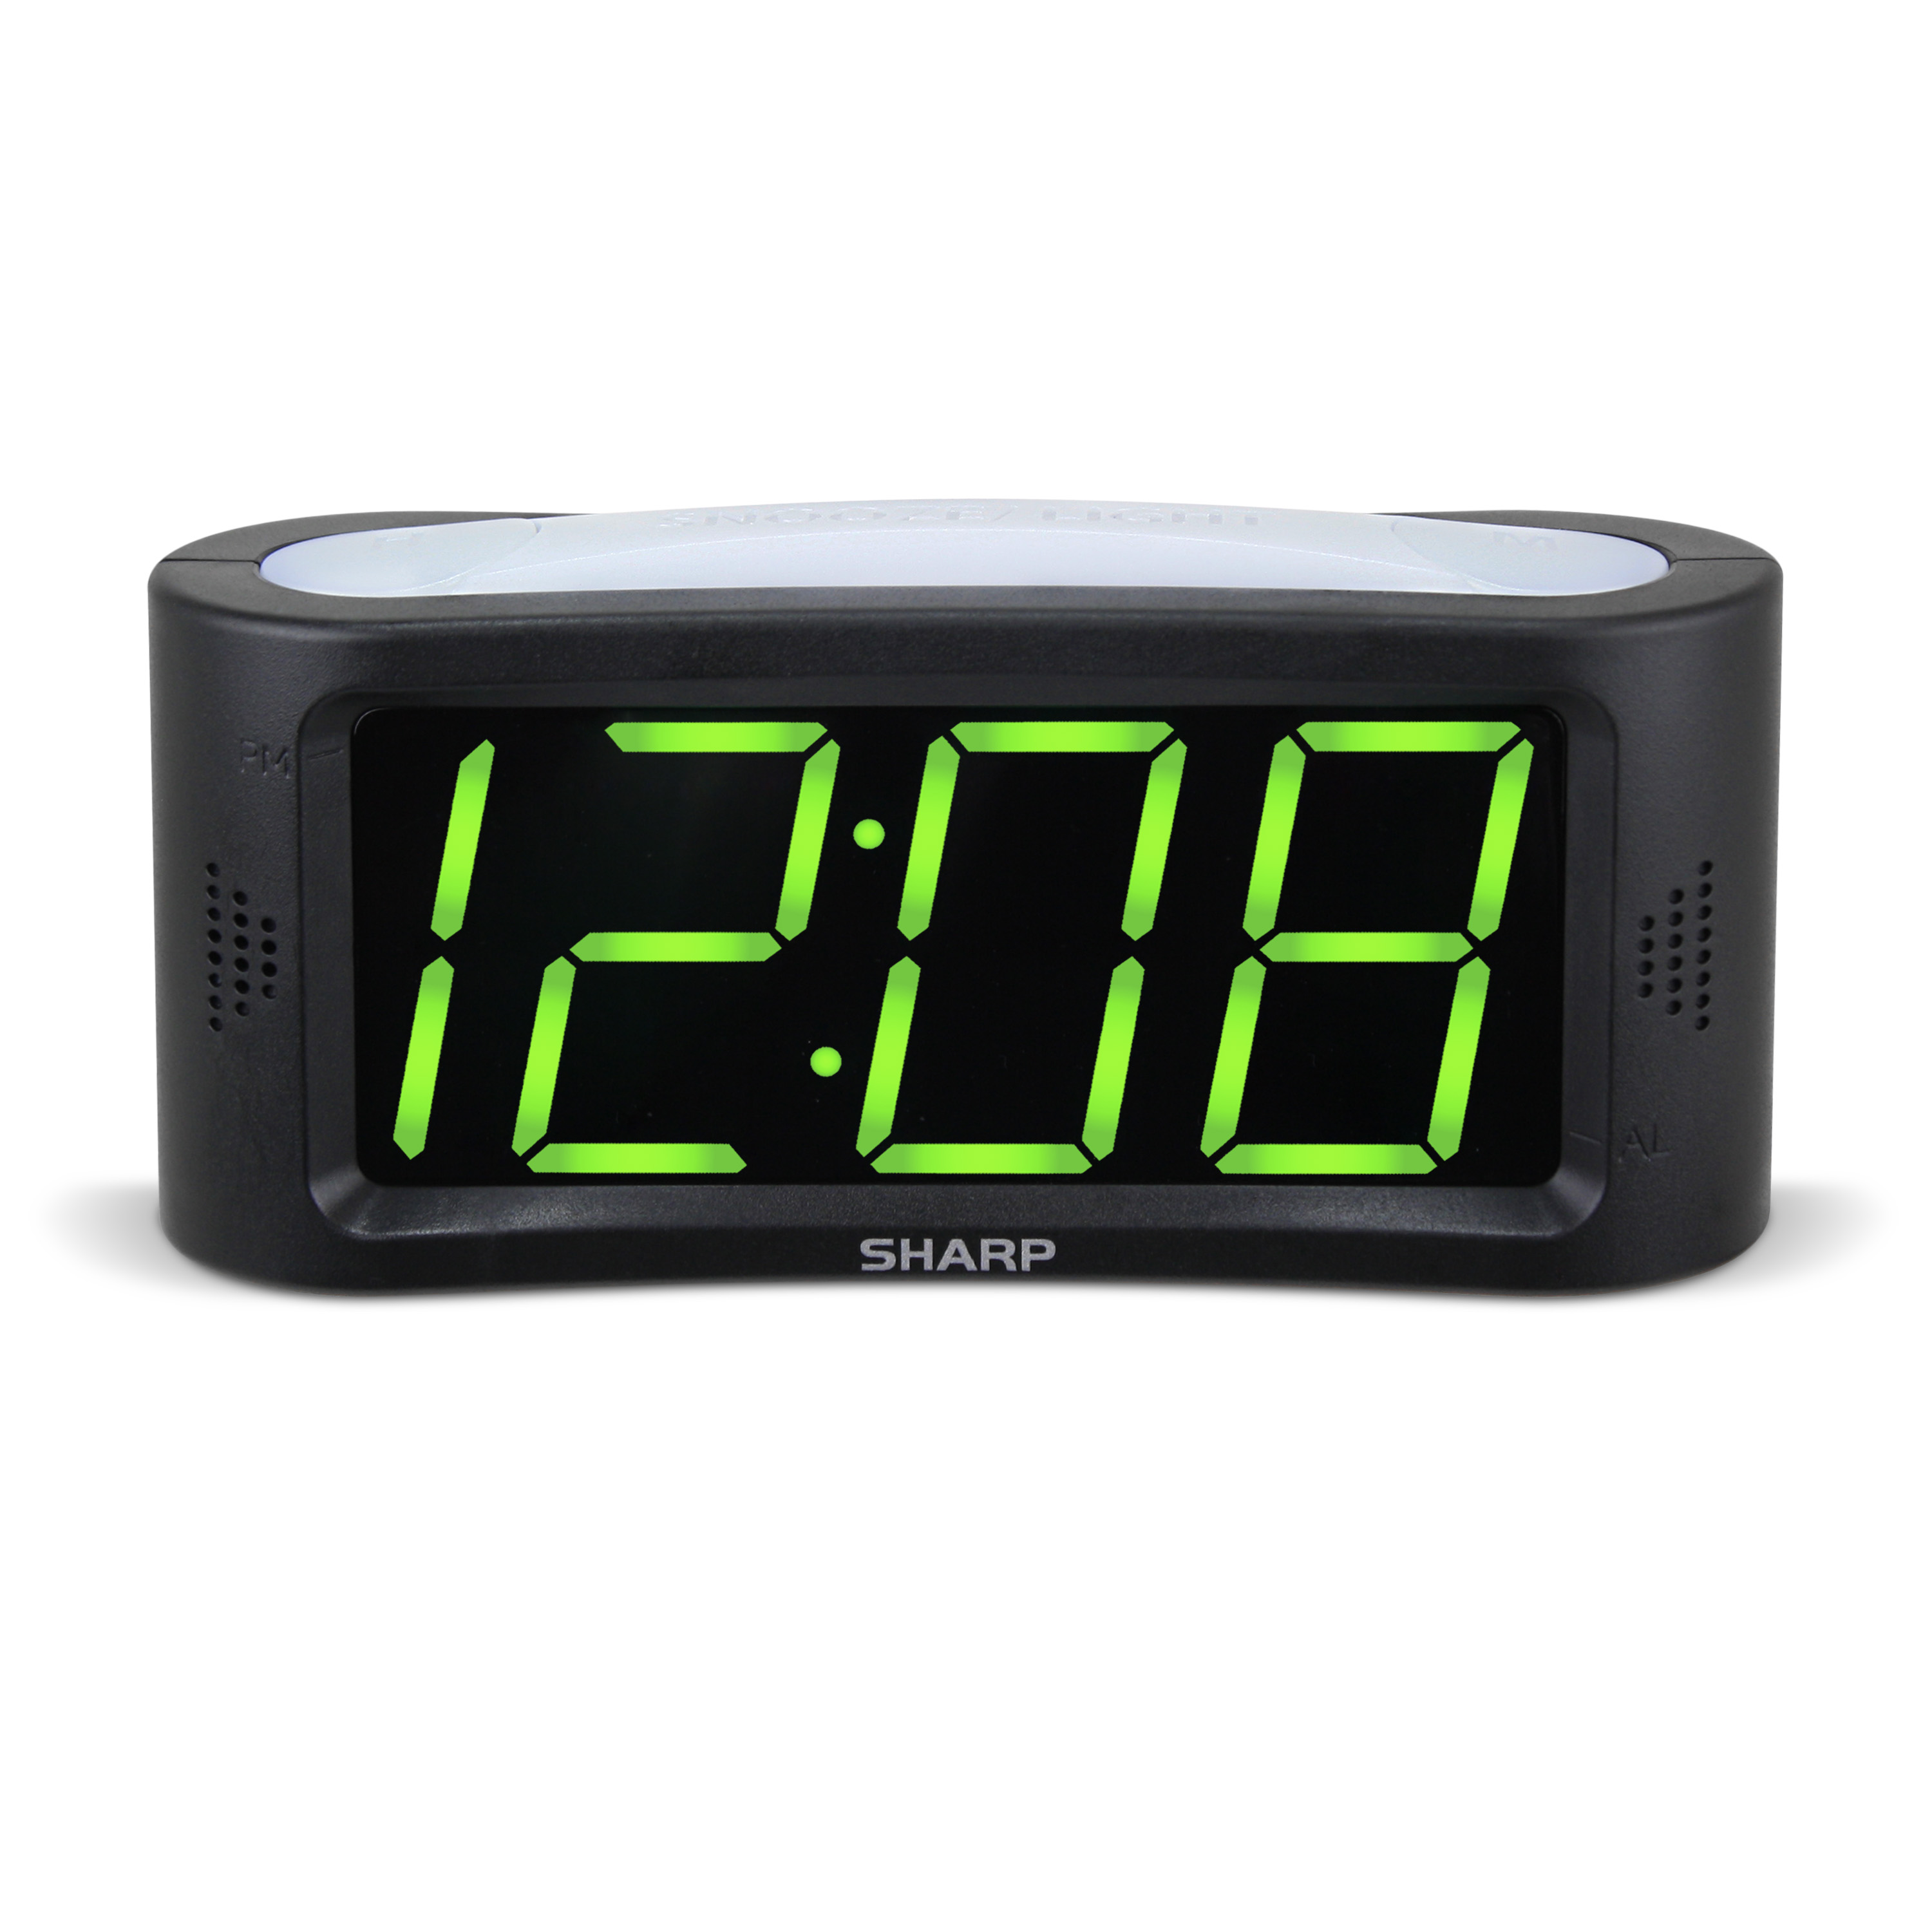 Sharp 1.8 Green LED Alarm Clock, Nightlight